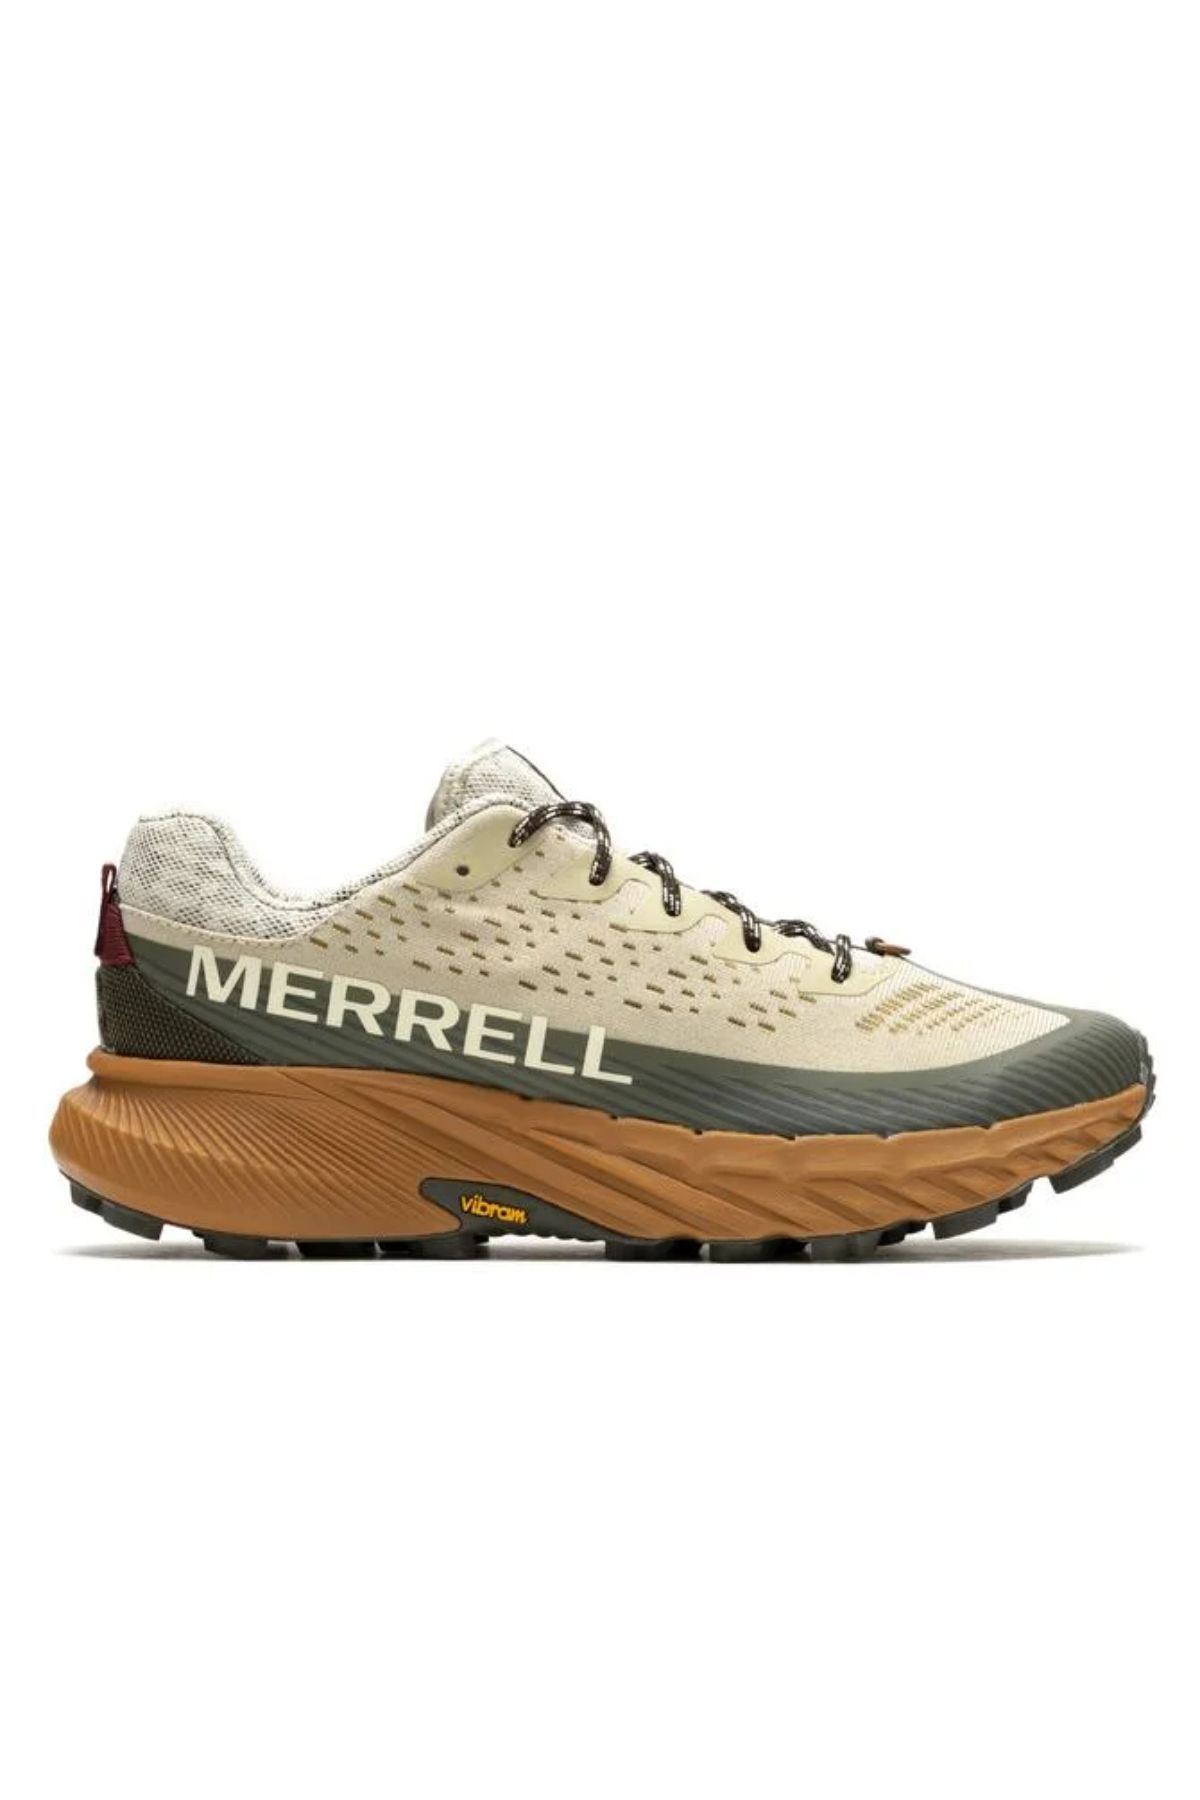 Merrell J067767 Agılıty Peak 5 Erkek Spor Ayakkabısı Bej